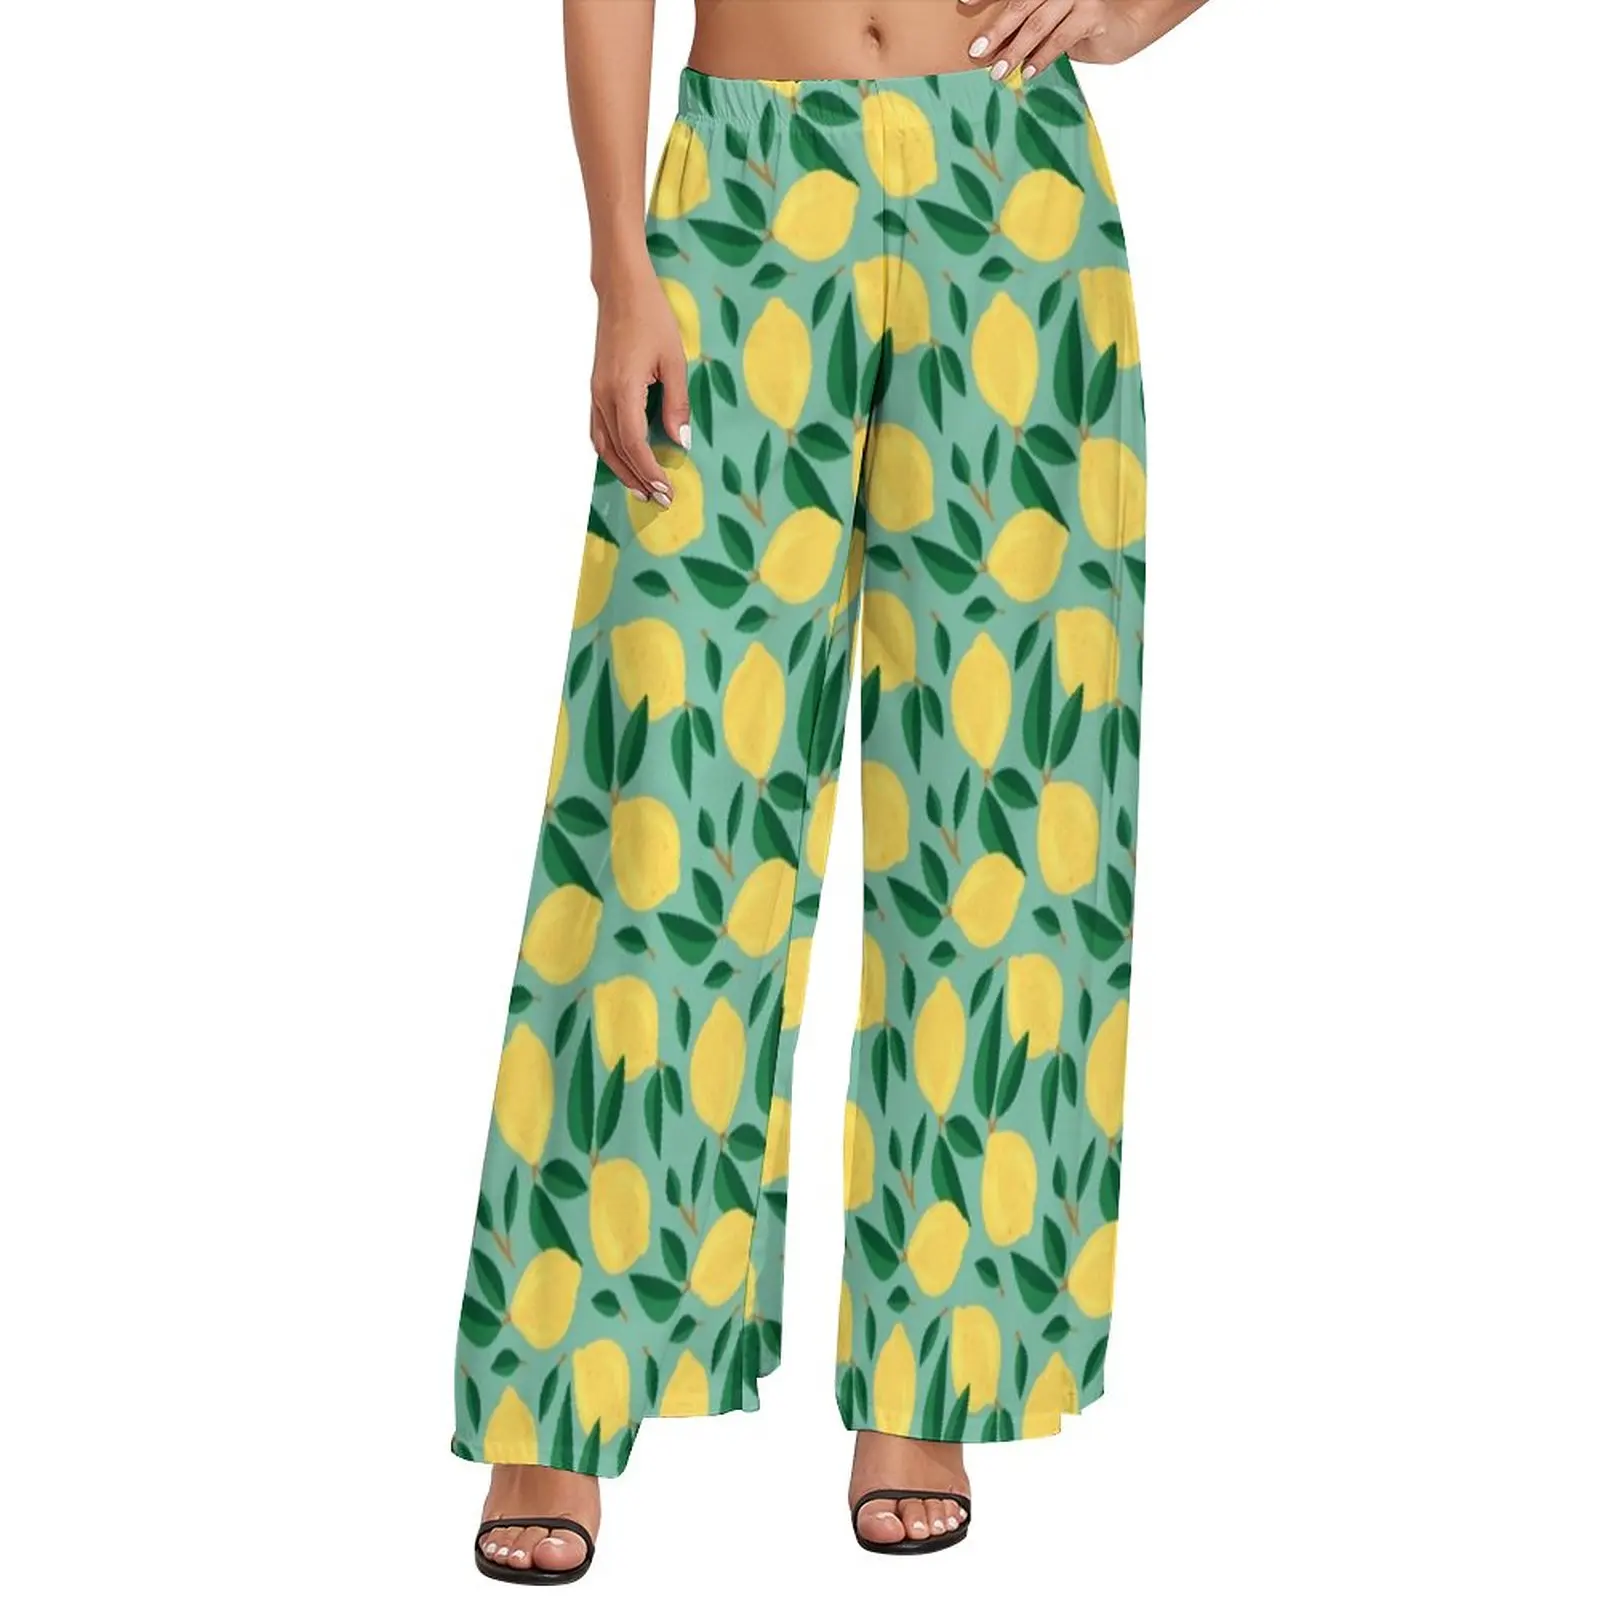 

Уличная одежда с принтом в виде фруктов Marley штаны с рисунком лимона, прямые брюки с широкими штанинами, эластичные элегантные брюки с высокой талией, большие размеры 4XL 5XL